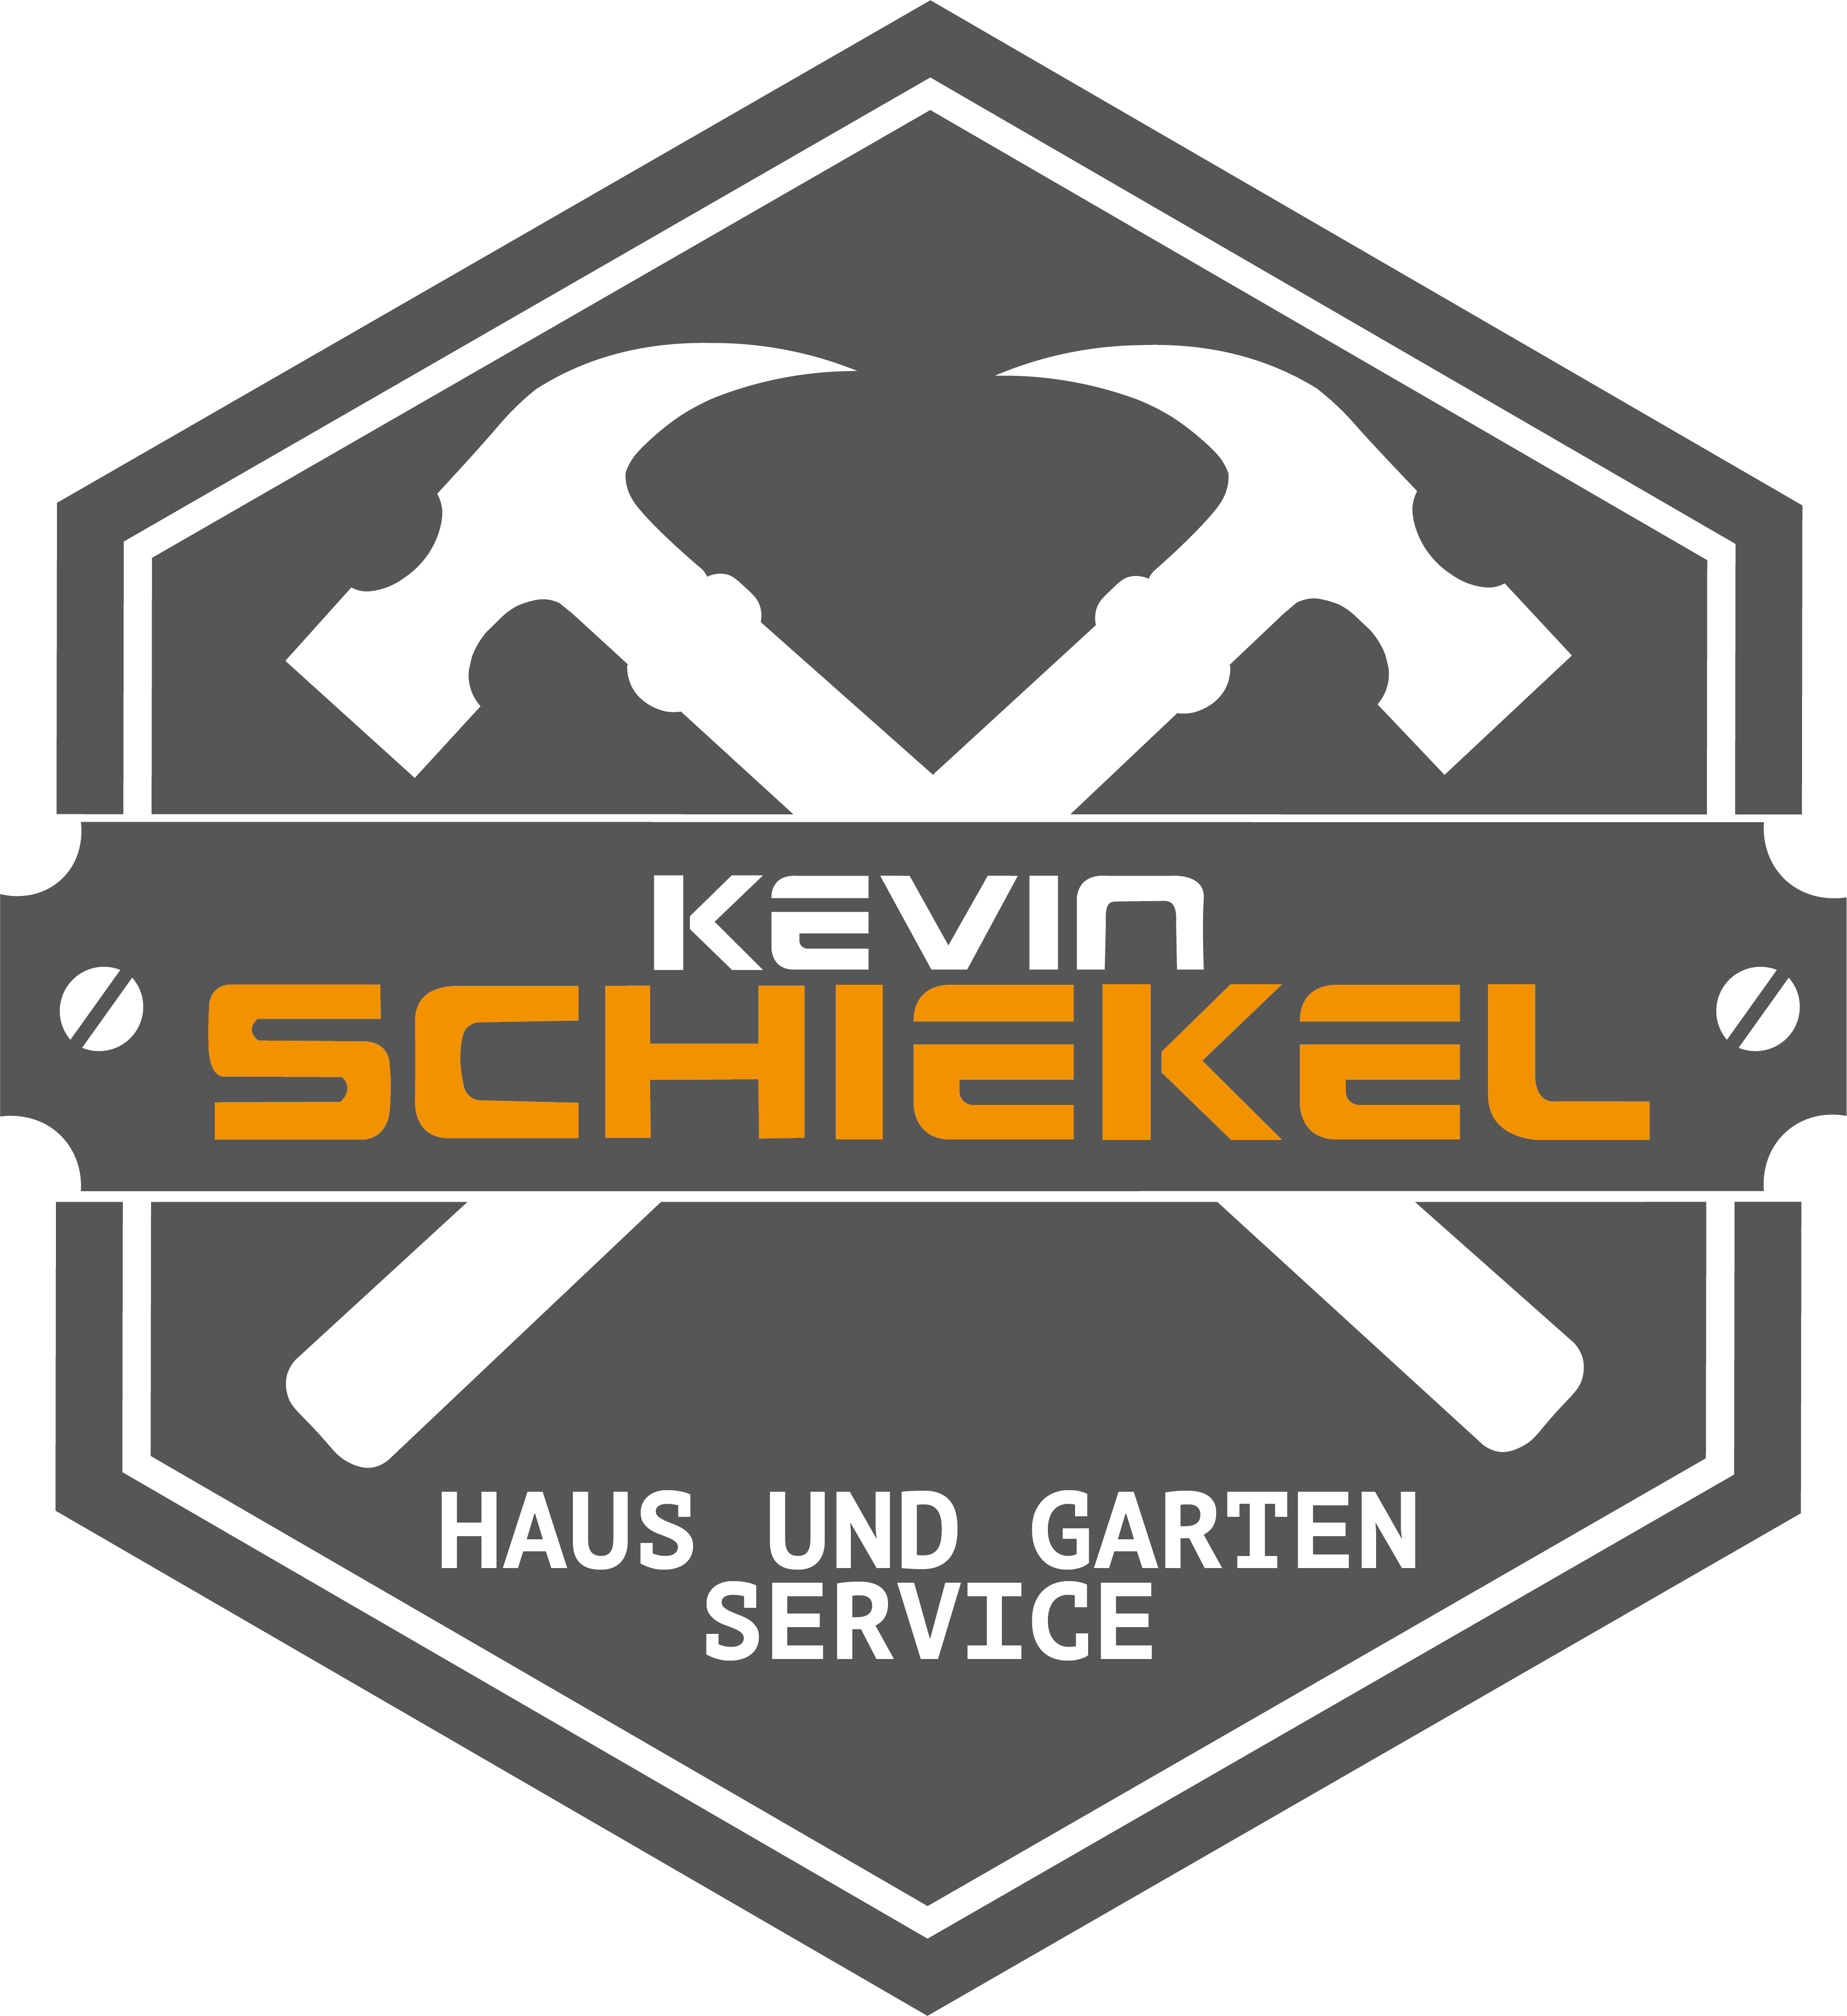 Kevin Schiekel Haus und Garten Service